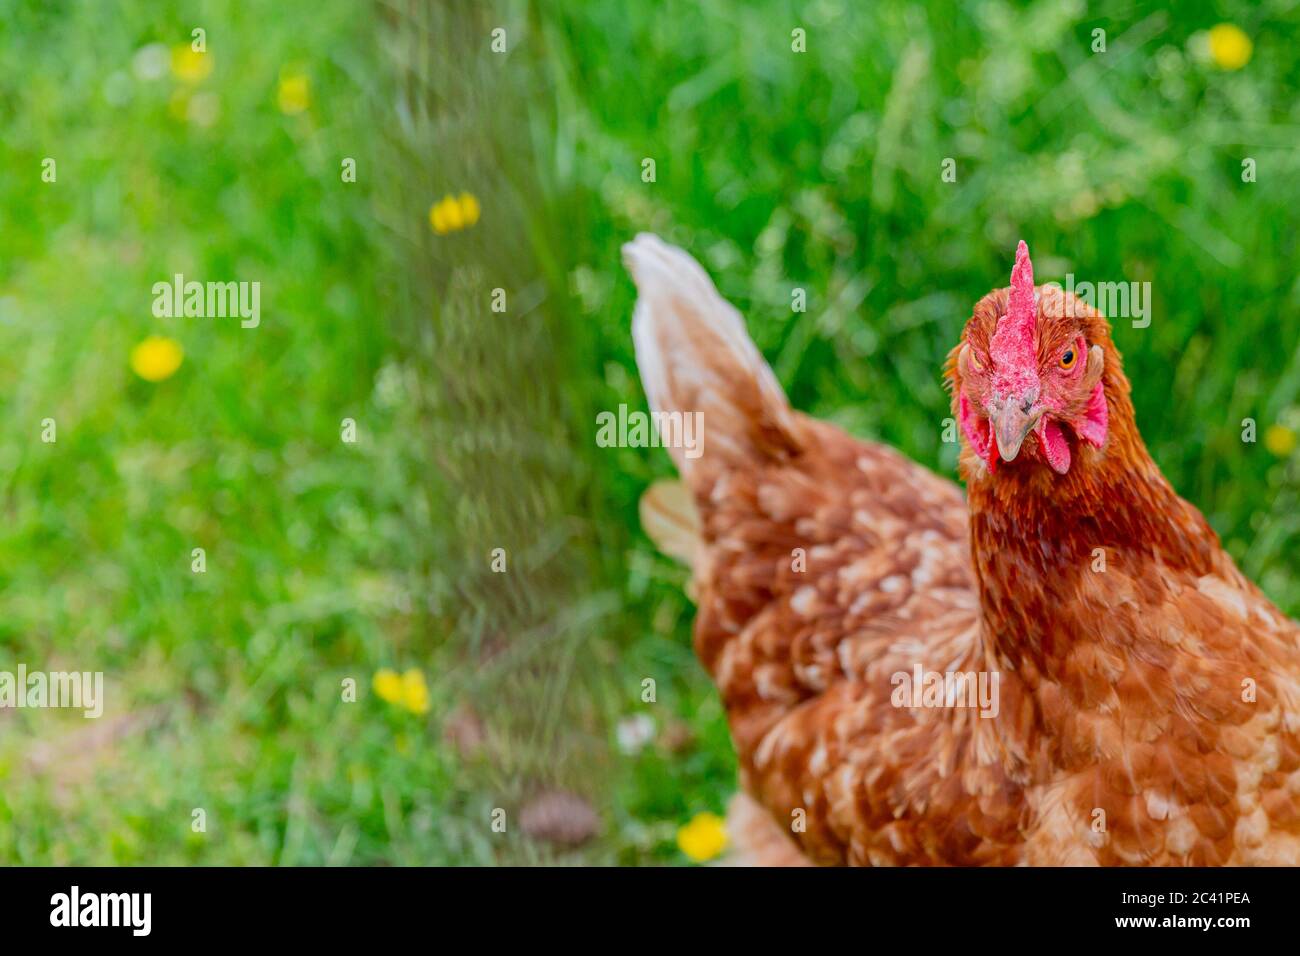 Primer plano de un pollo rojo de la afeitadora con un color marrón rojizo en una granja orgánica con hierba verde sobre un fondo borroso Foto de stock